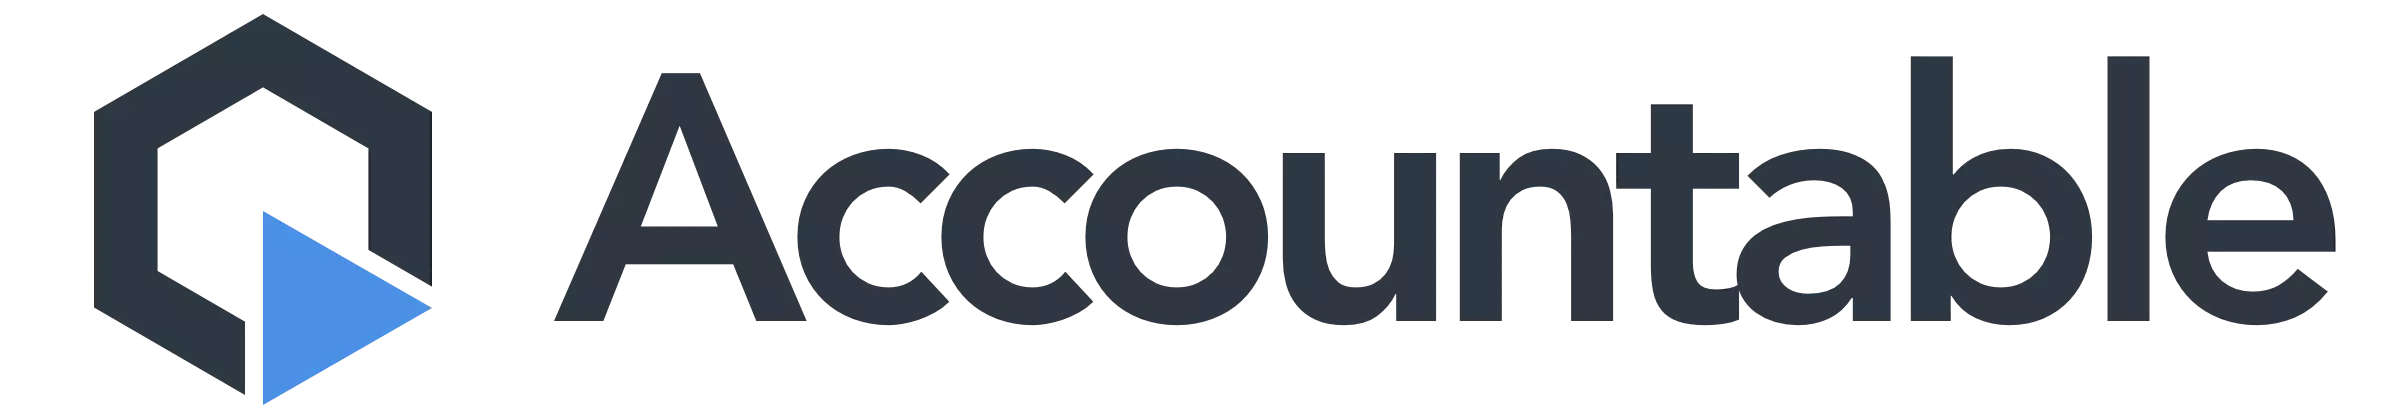 accountable logo